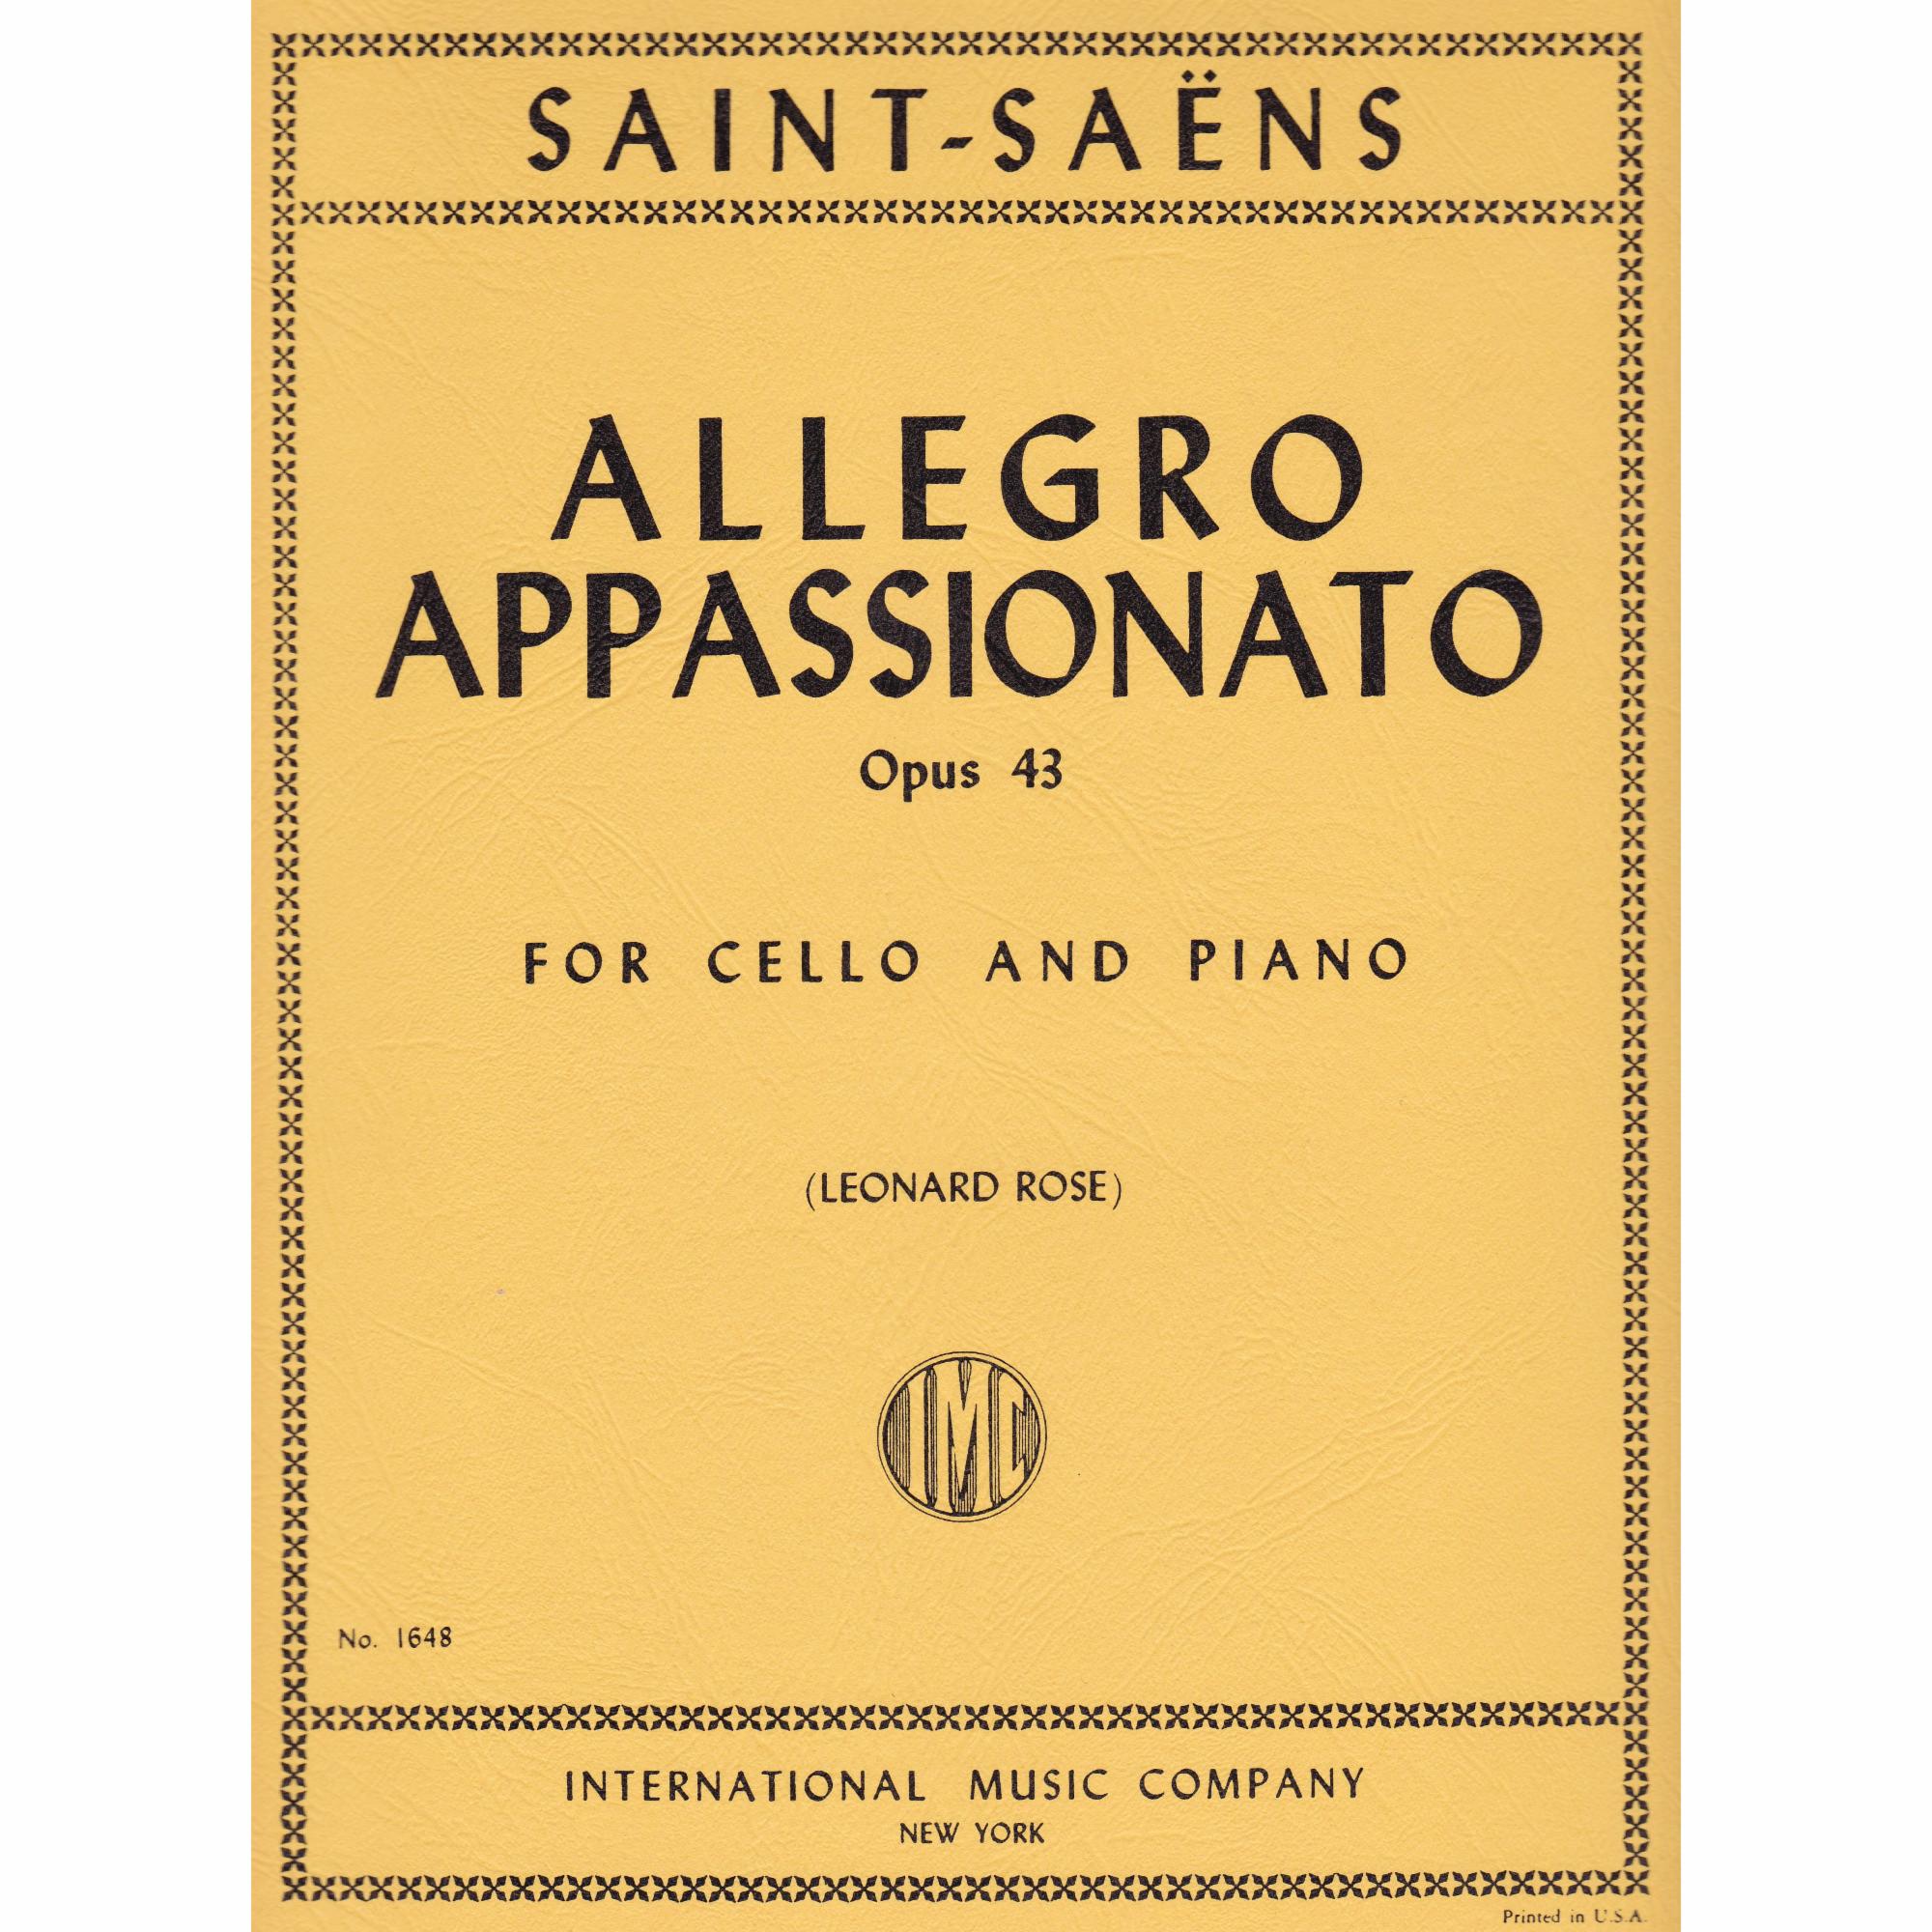 Allegro Appassionato for Cello and Piano, Op. 43